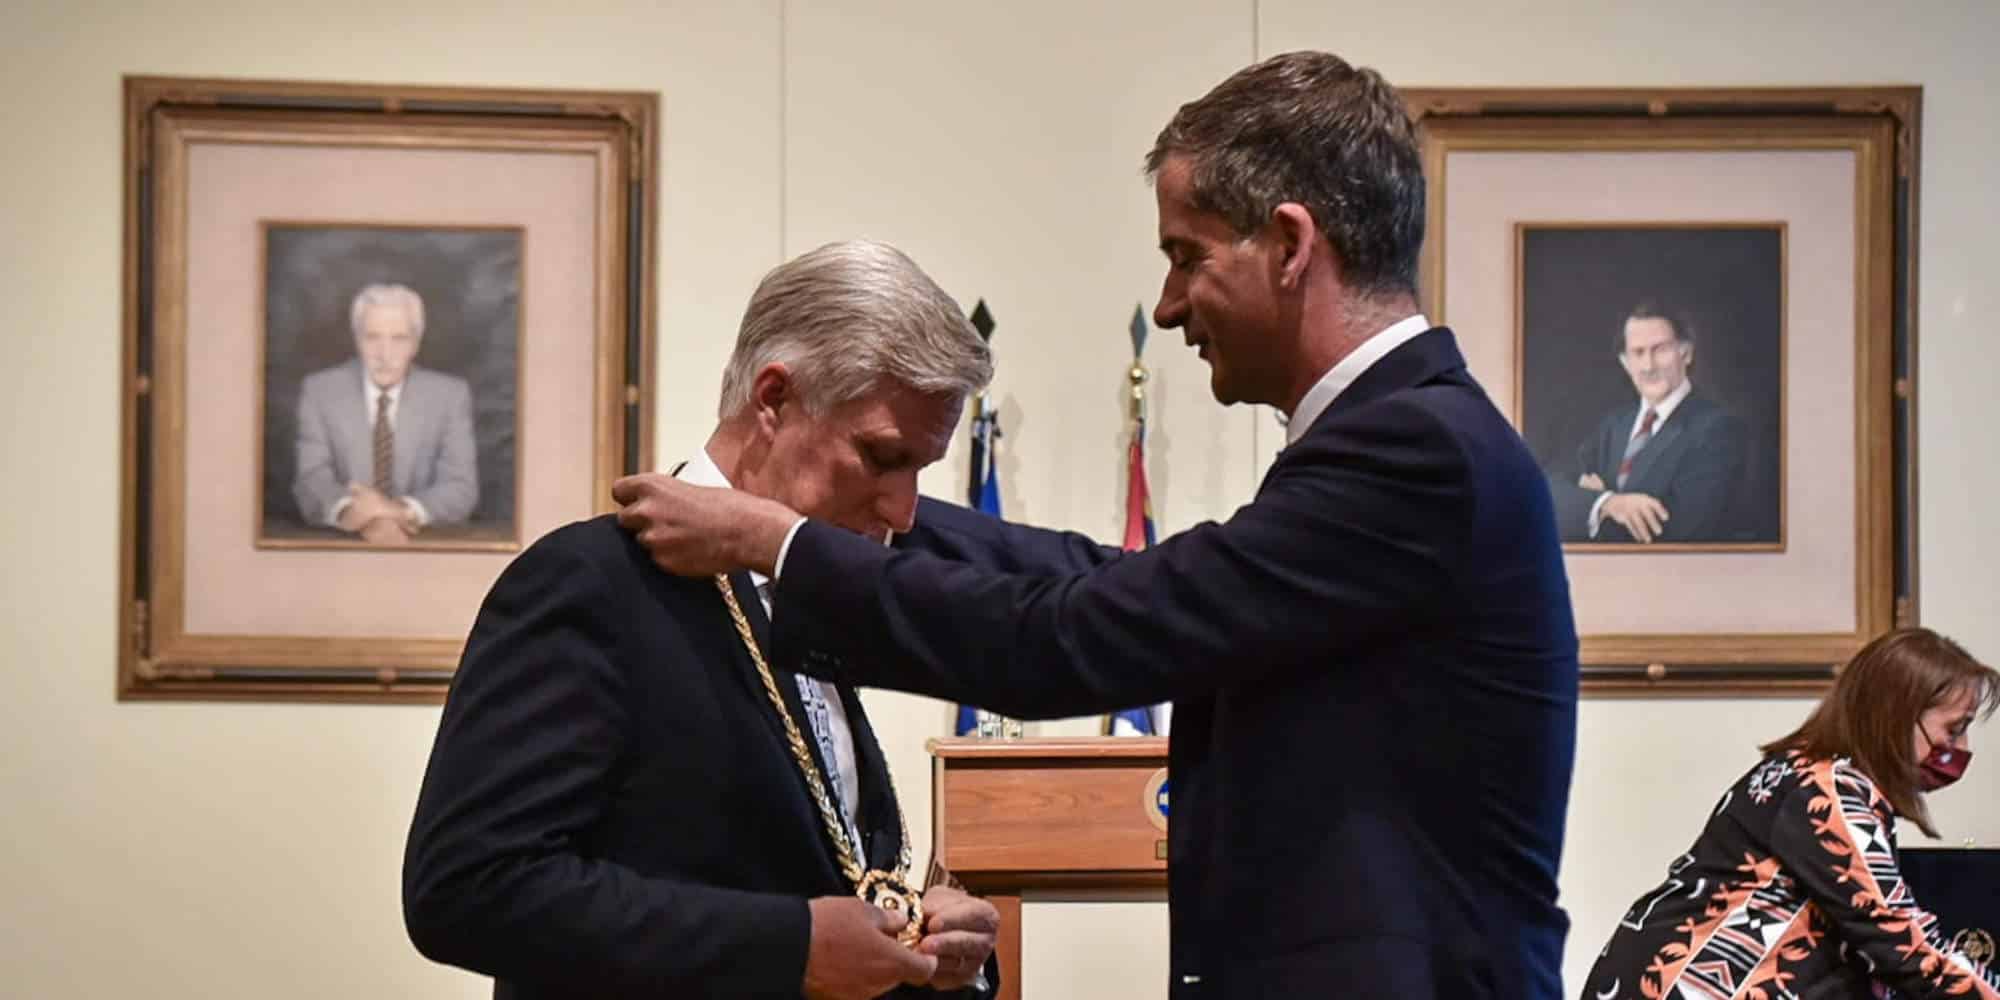 Ο Δήμαρχος Αθηναίων, Κώστας Μπακογιάννης, απονέμει το μετάλλιο της πόλης στον Βασιλιά του Βελγίου Φίλιππο